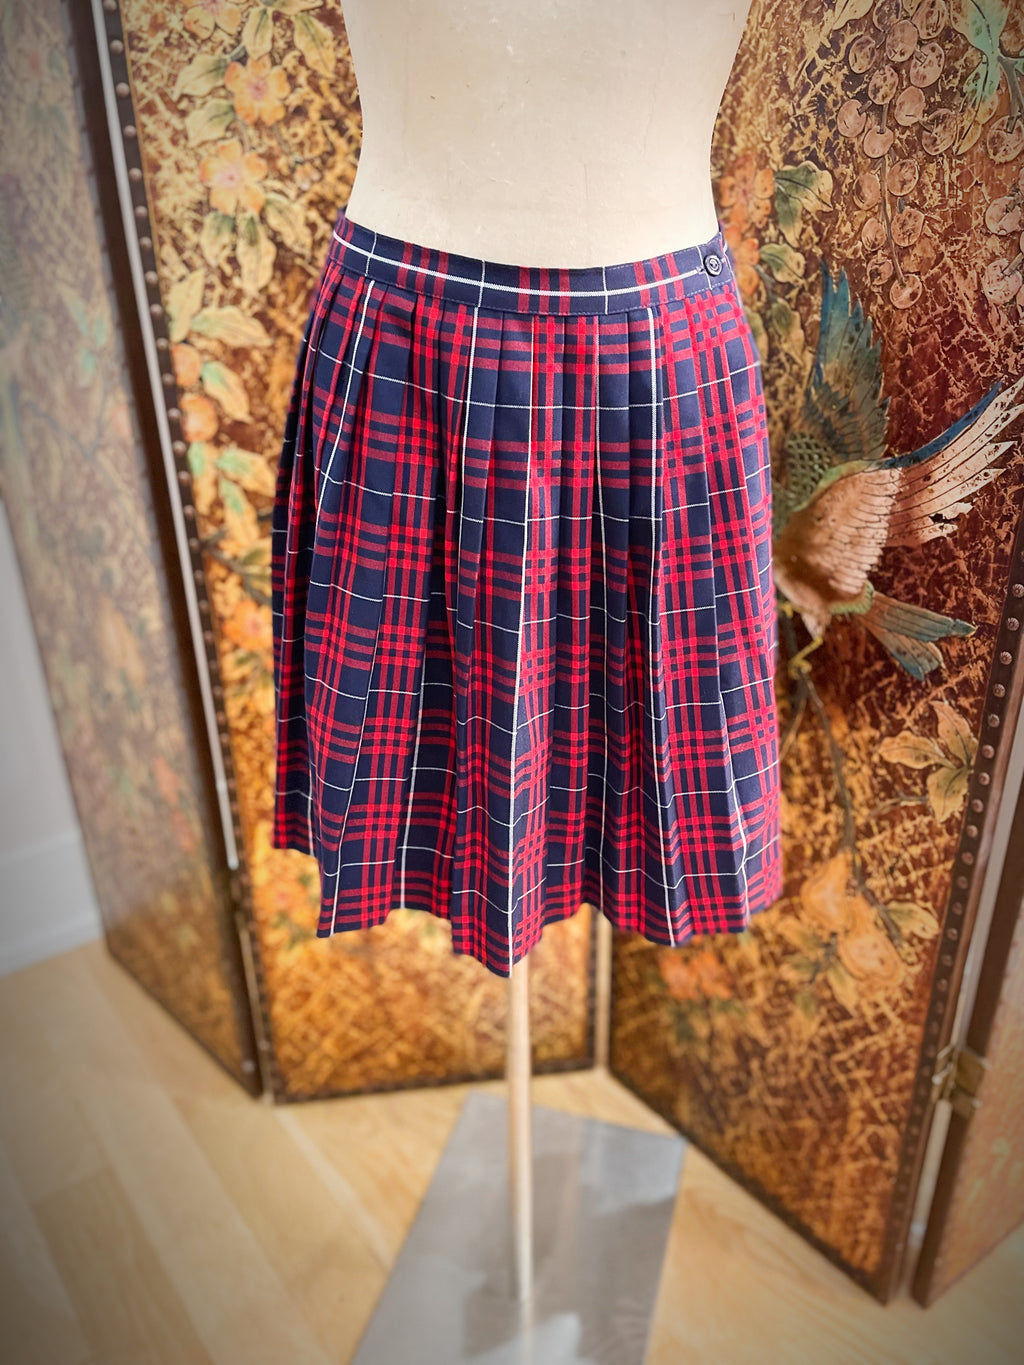 1960s Plaid School Girl Skirt